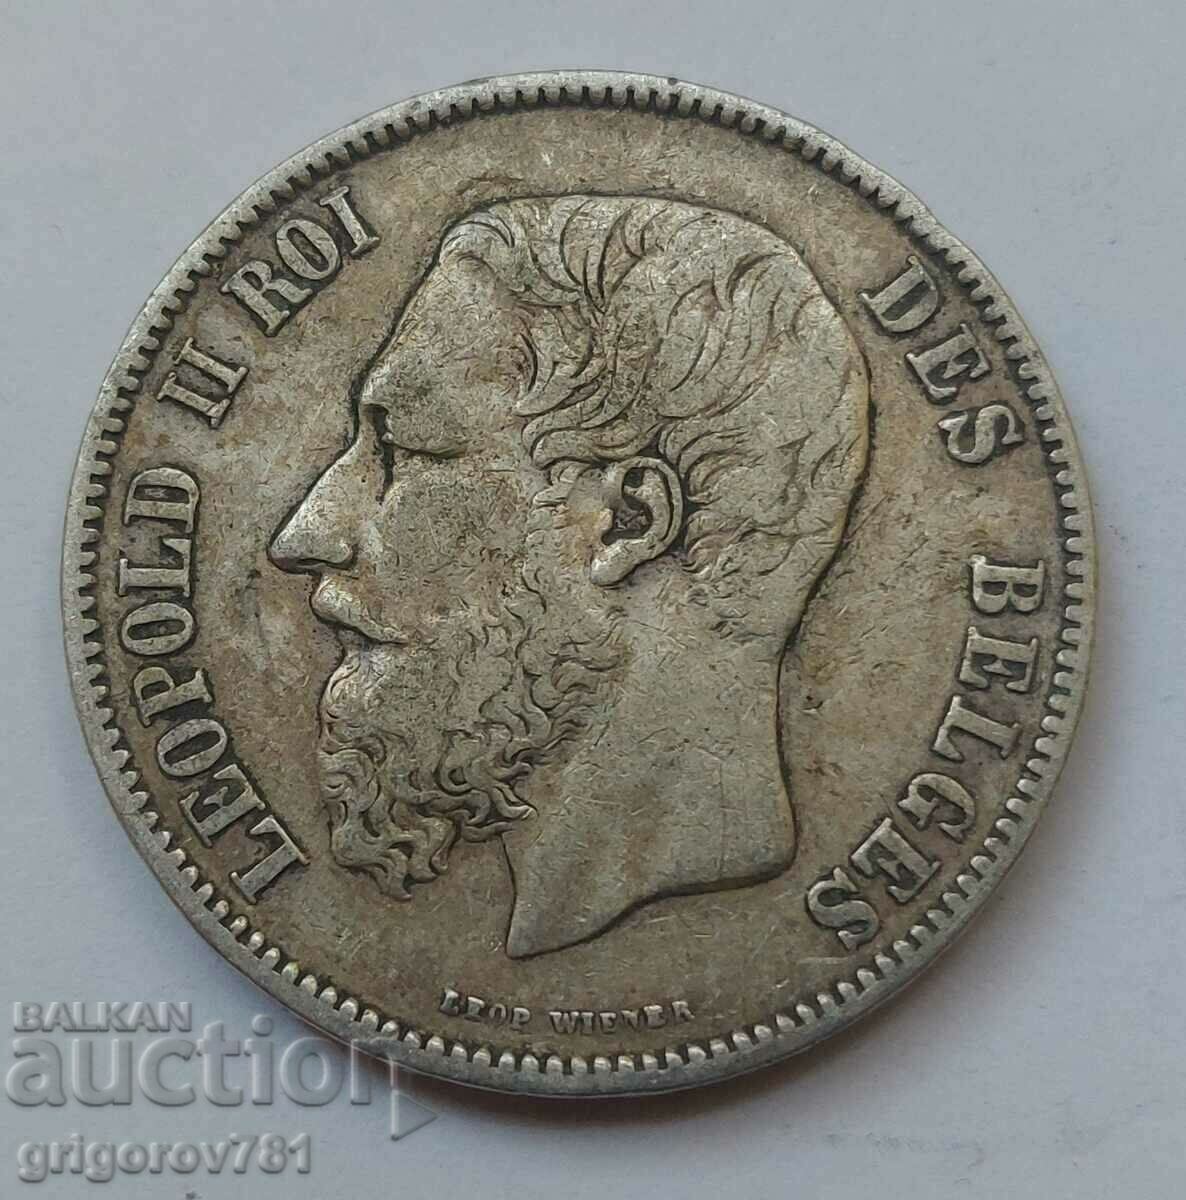 5 Francs Silver Belgium 1869 Silver Coin #164